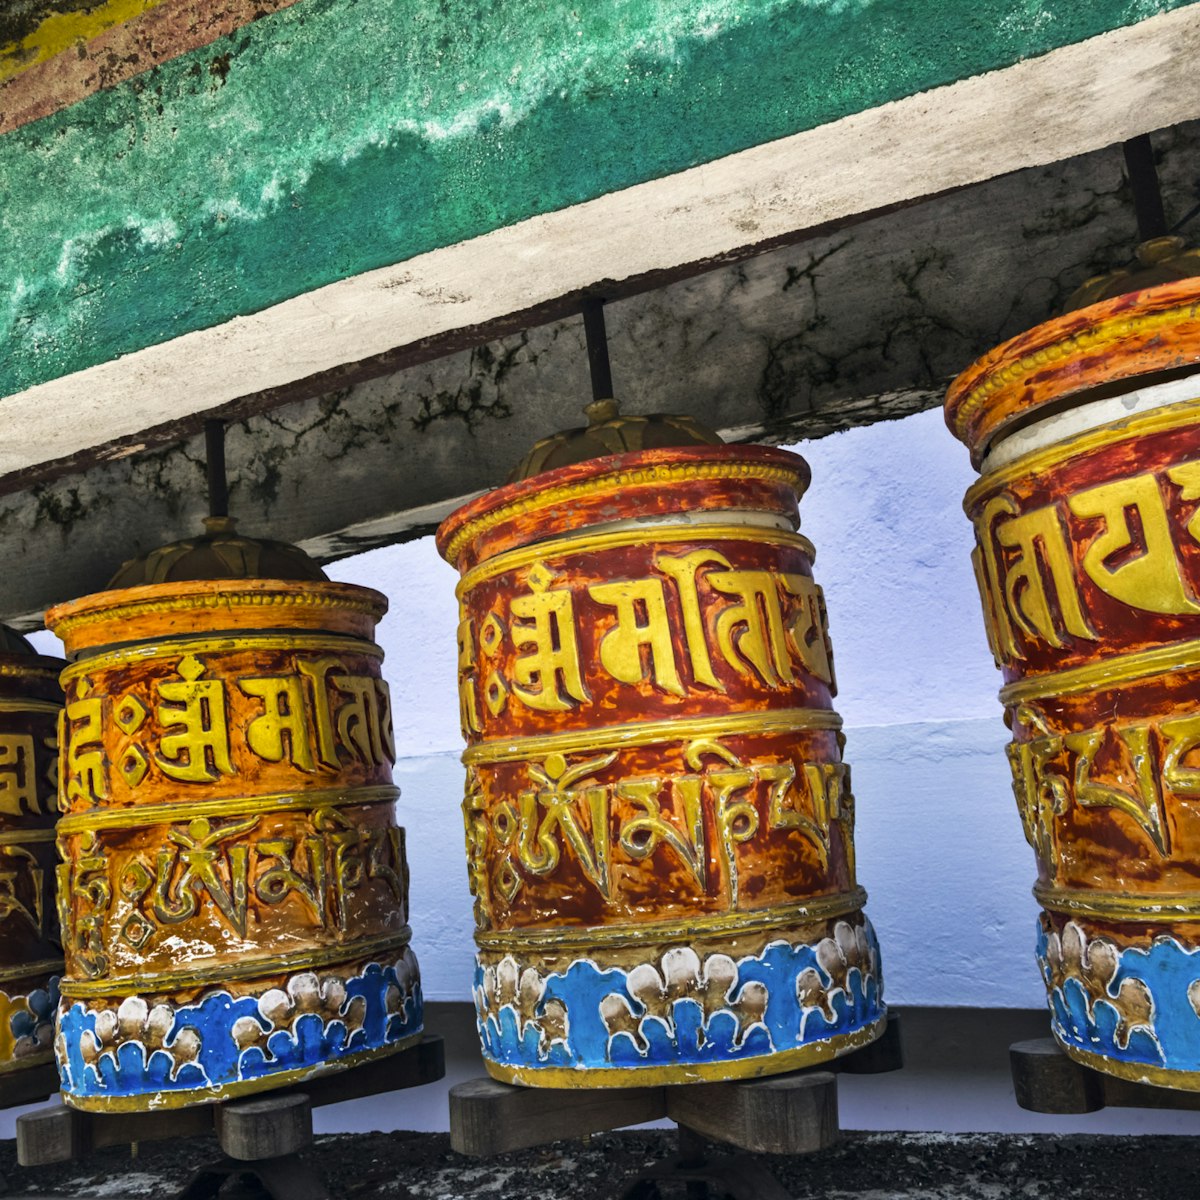 Rumtek, Tibetan prayer wheels